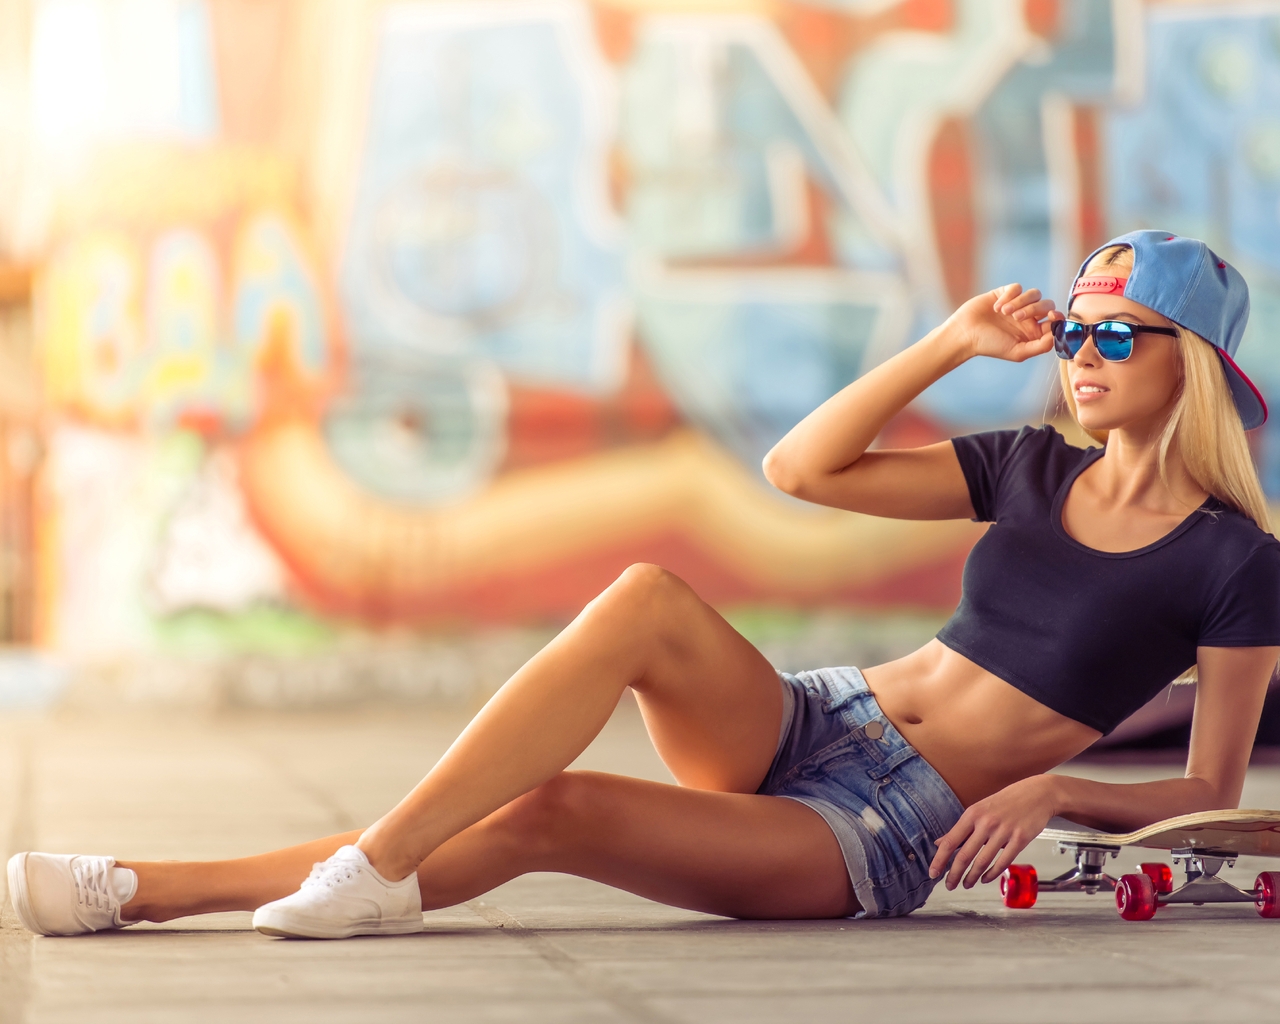 Image: Girl, blonde, cap, glasses, lies, skateboard, graffiti